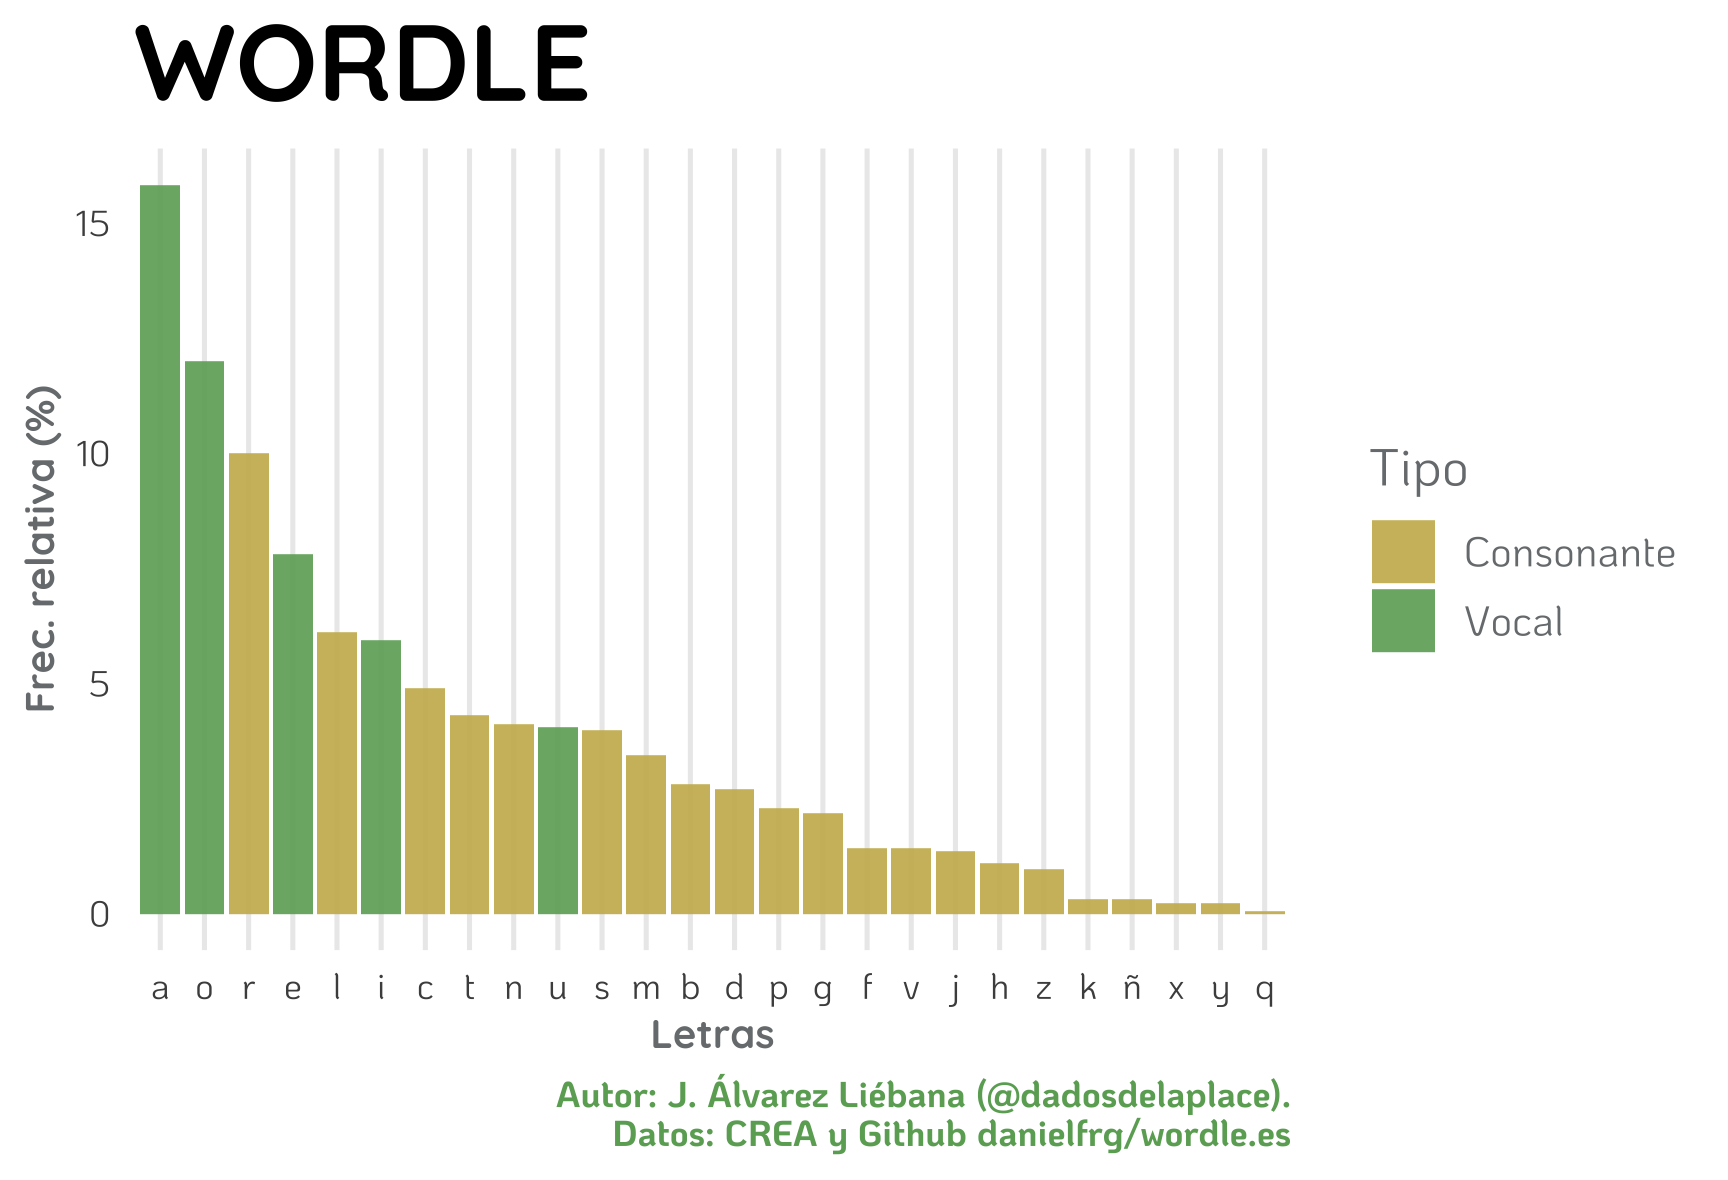 Distribución de las letras en palabras de WORDLE. Eje x representa letras del alfabeto. Eje y representa frecuencia relativa (en %). Color en función de vocal o consonante